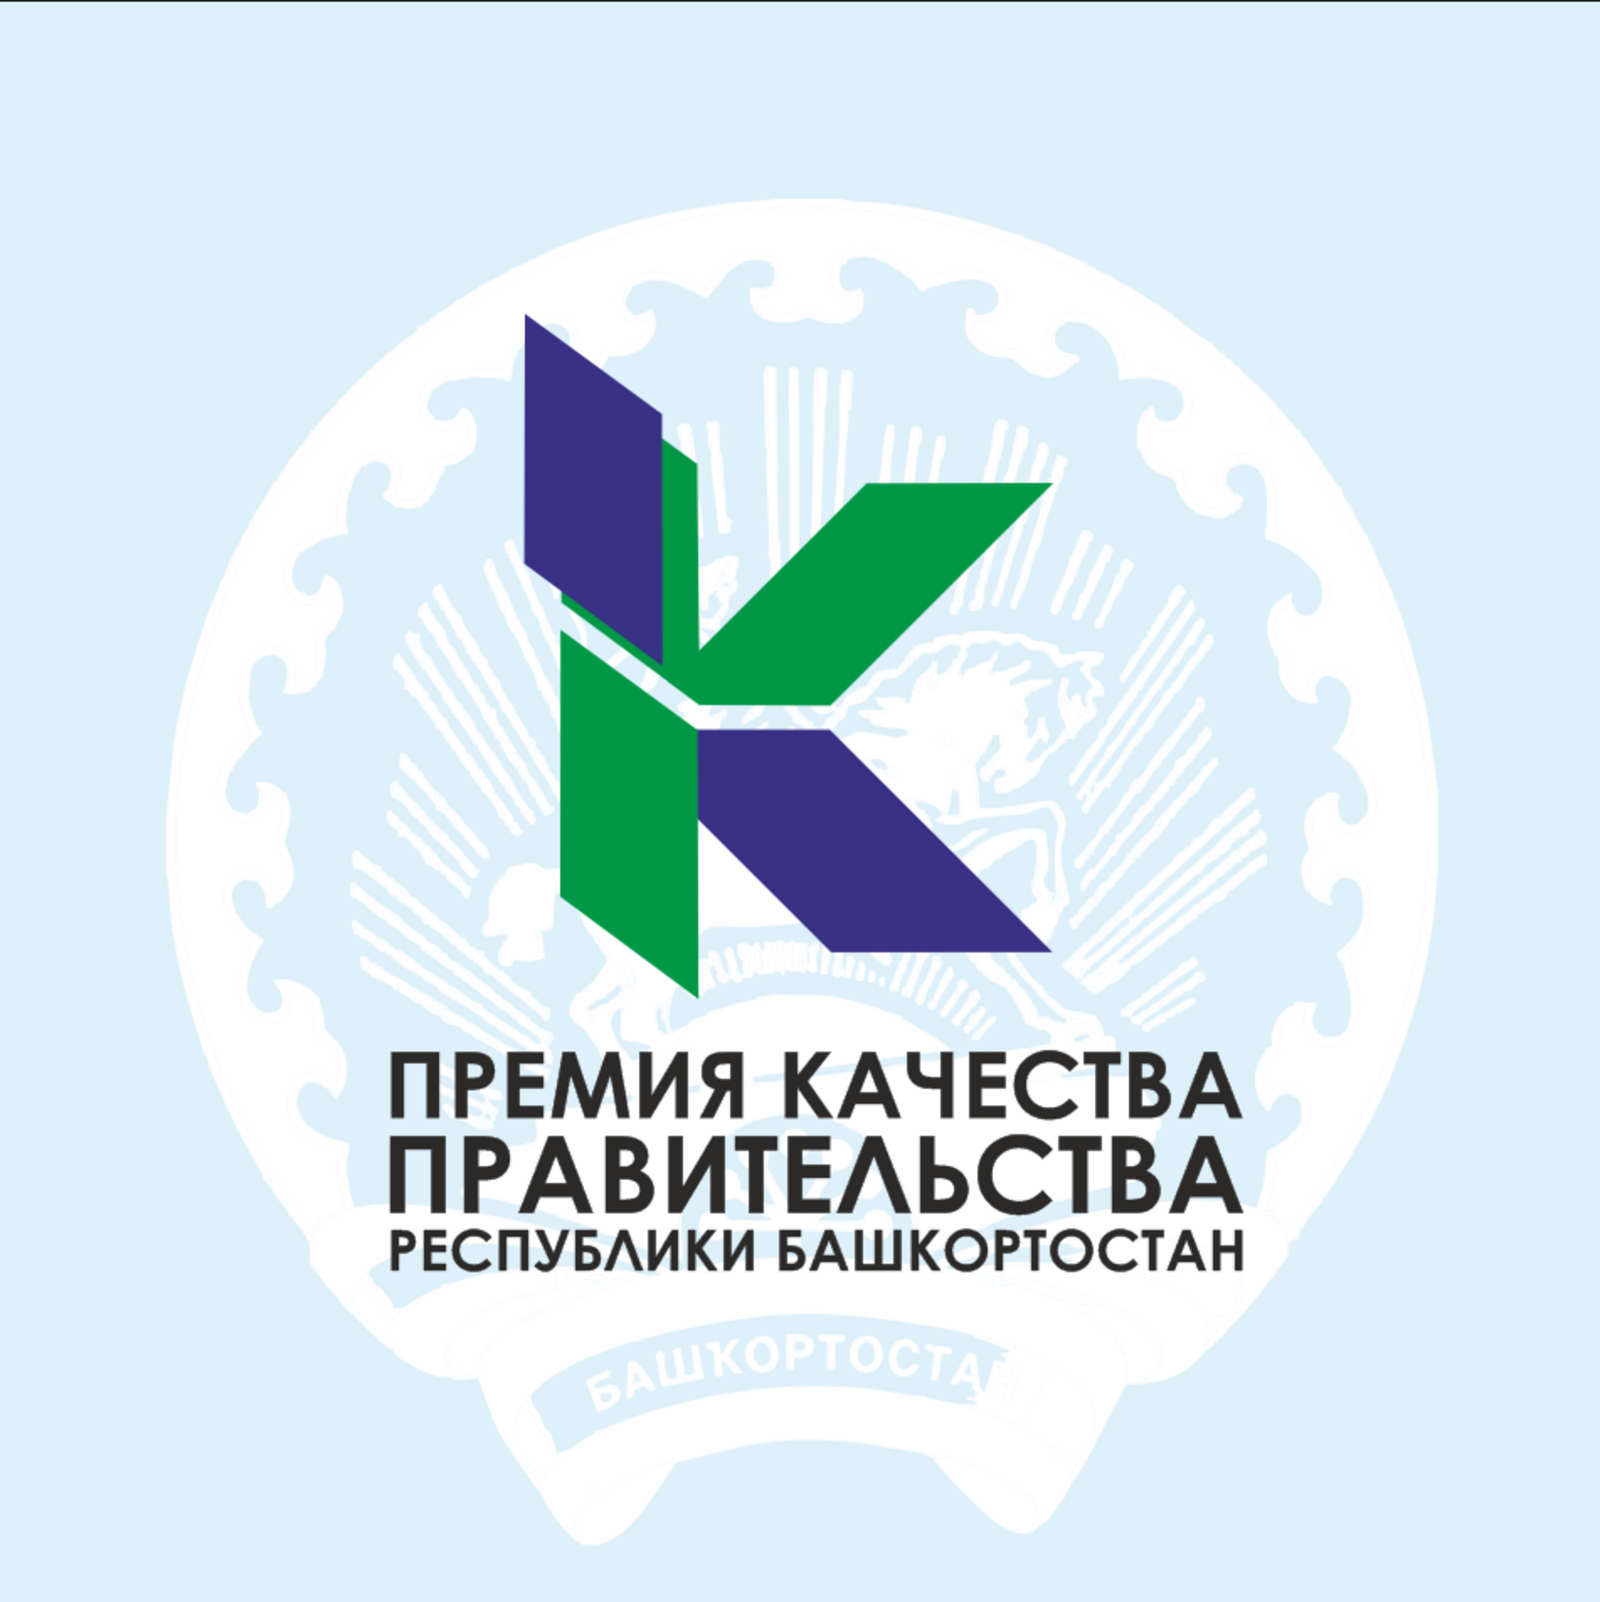 Объявляется конкурс на соискание Премий Правительства Республики Башкортостан в области качества за 2021 год